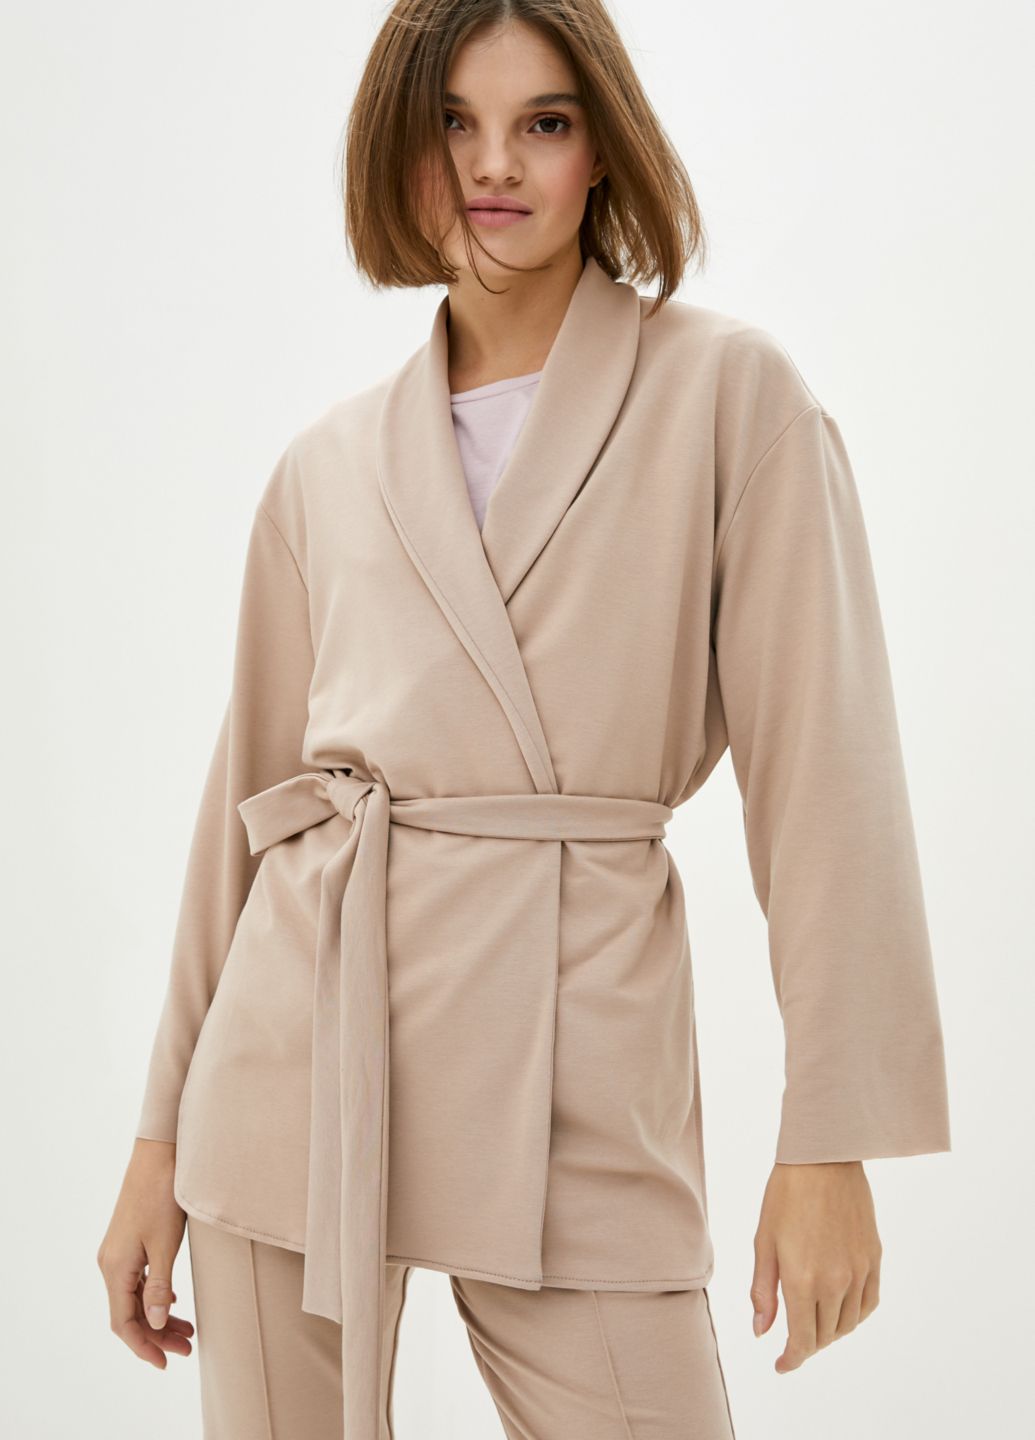 Купить Классический костюм женский бежевого цвета Merlini Йоркшир 100000049, размер 42-44 в интернет-магазине